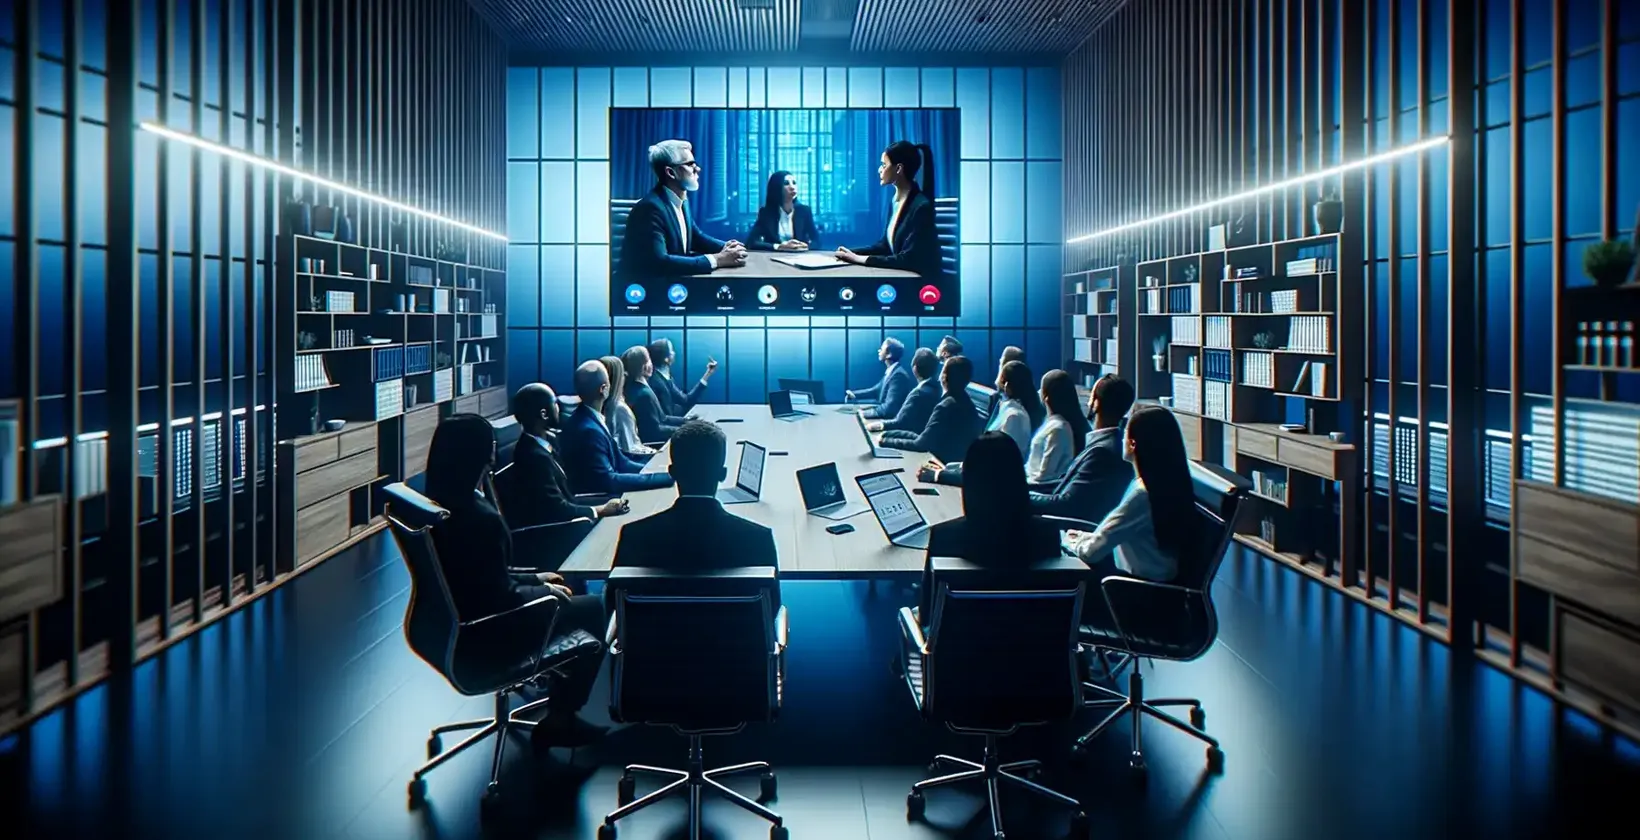 Наблюдава се транскрипция на срещата, докато професионалисти в стая със синя светлина наблюдават видеоразговор между трима души.